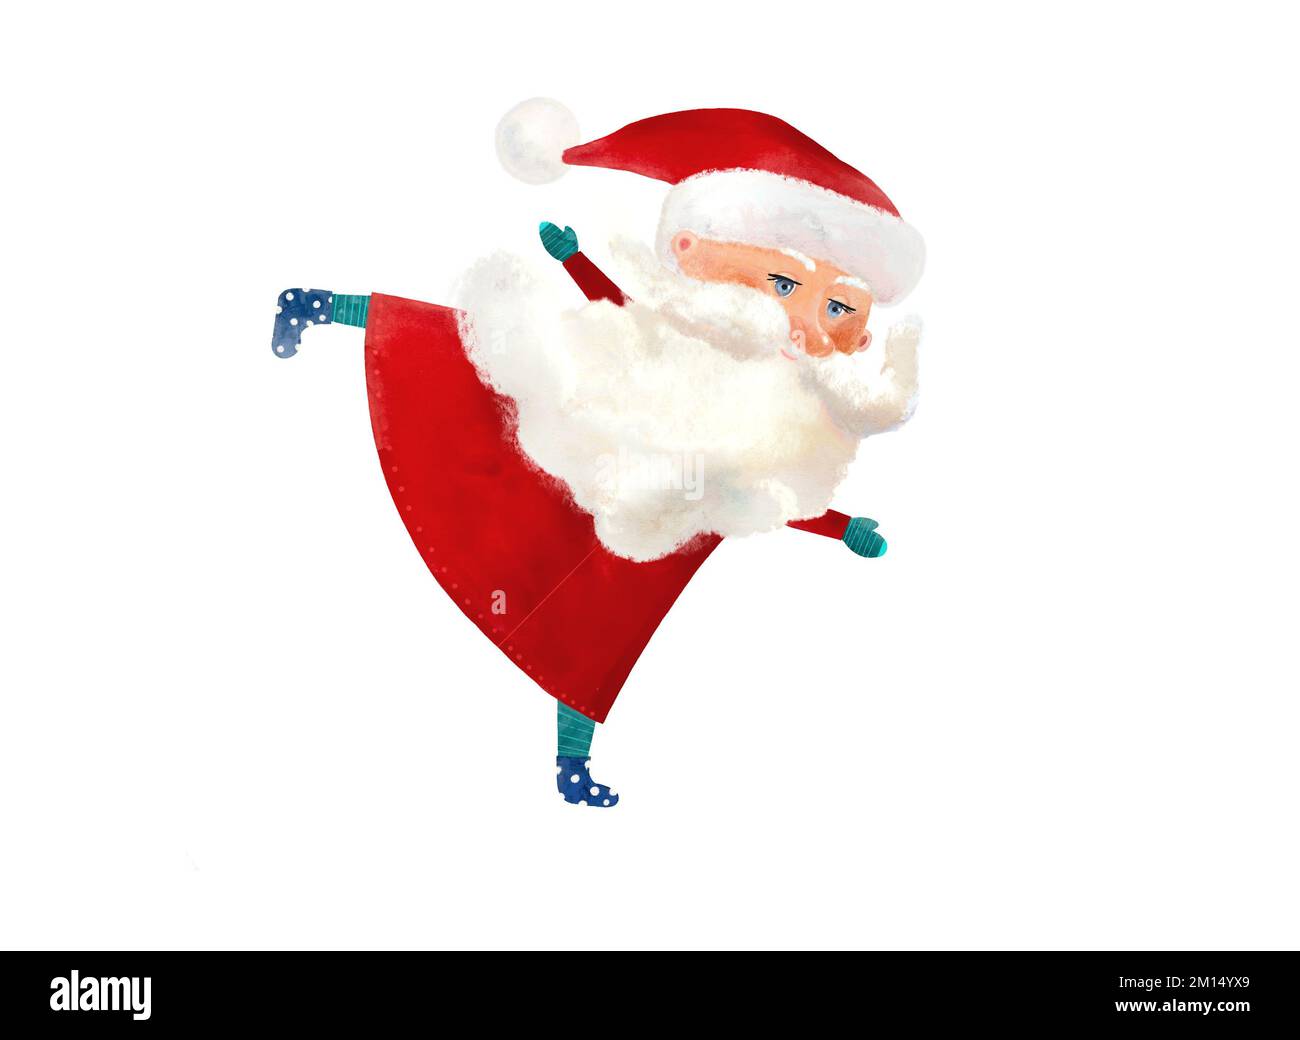 Illustration Santa Claus ice skating isolated on white background Stock Photo